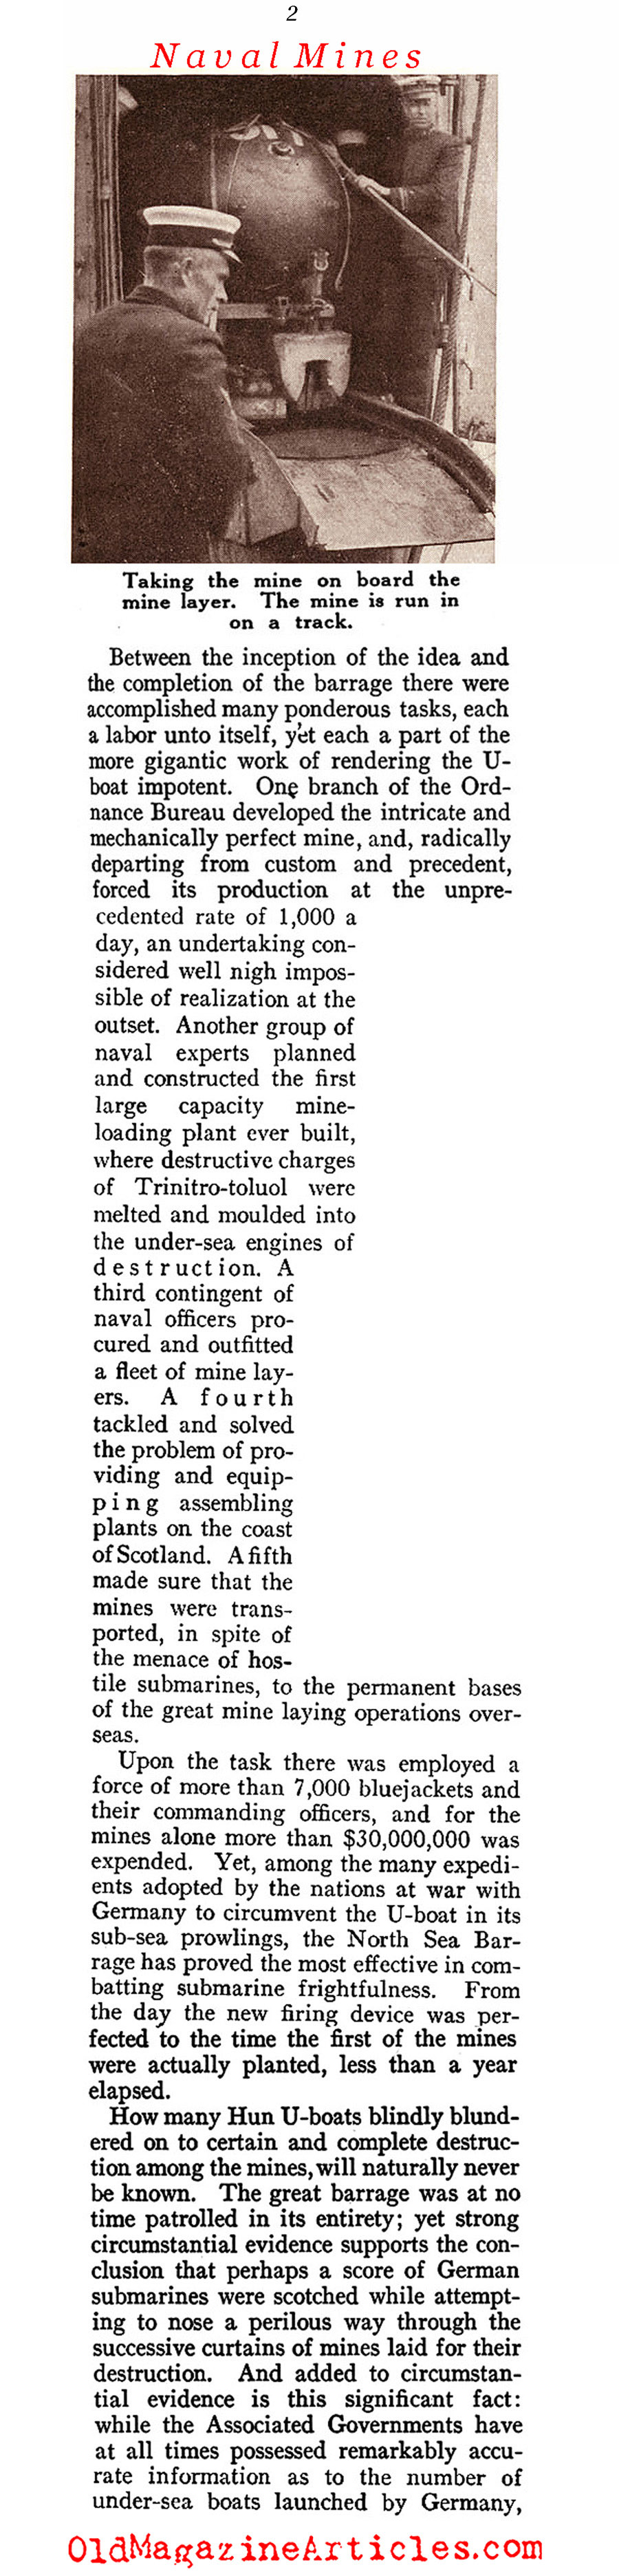 American Naval Mines of W.W. I (Sea Power Magazine, 1919)